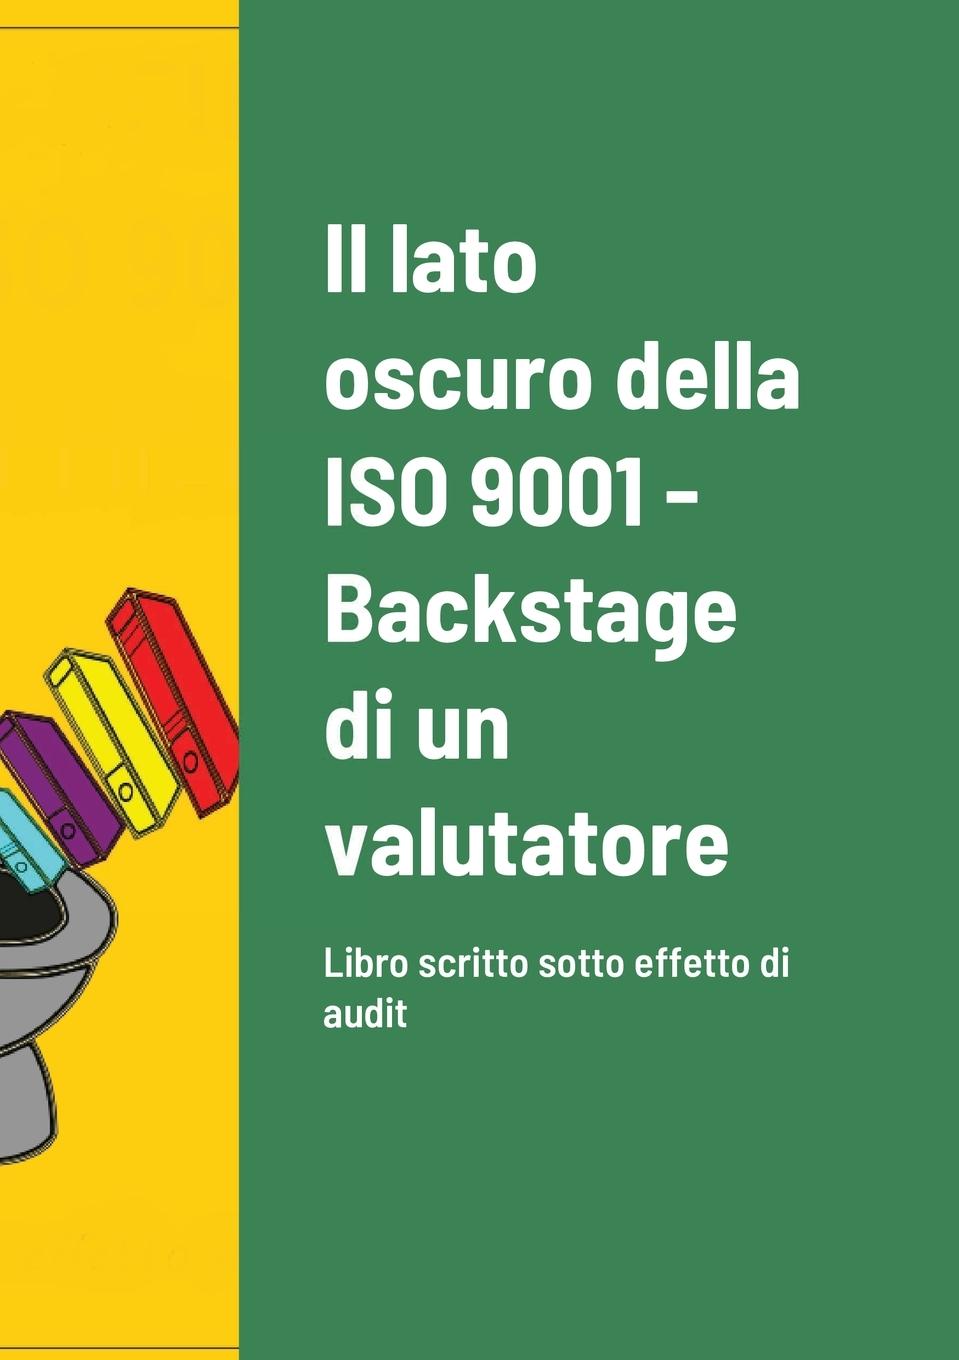 Carte lato oscuro della ISO 9001 - Backstage di un valutatore 